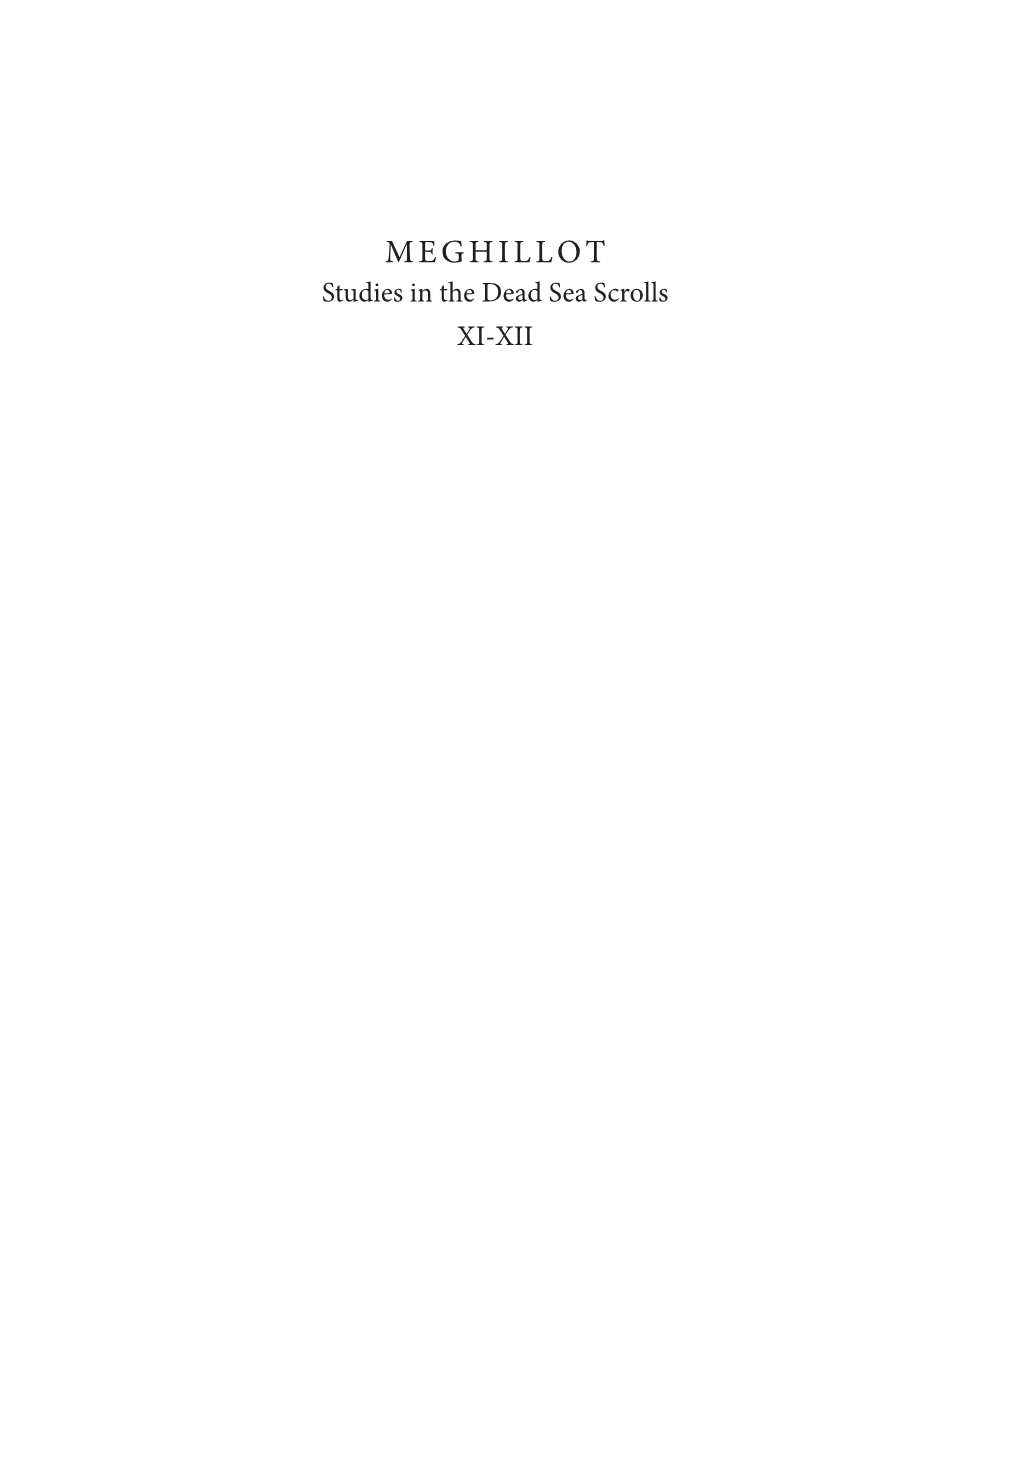 MEGHILLOT Studies in the Dead Sea Scrolls XI-XII